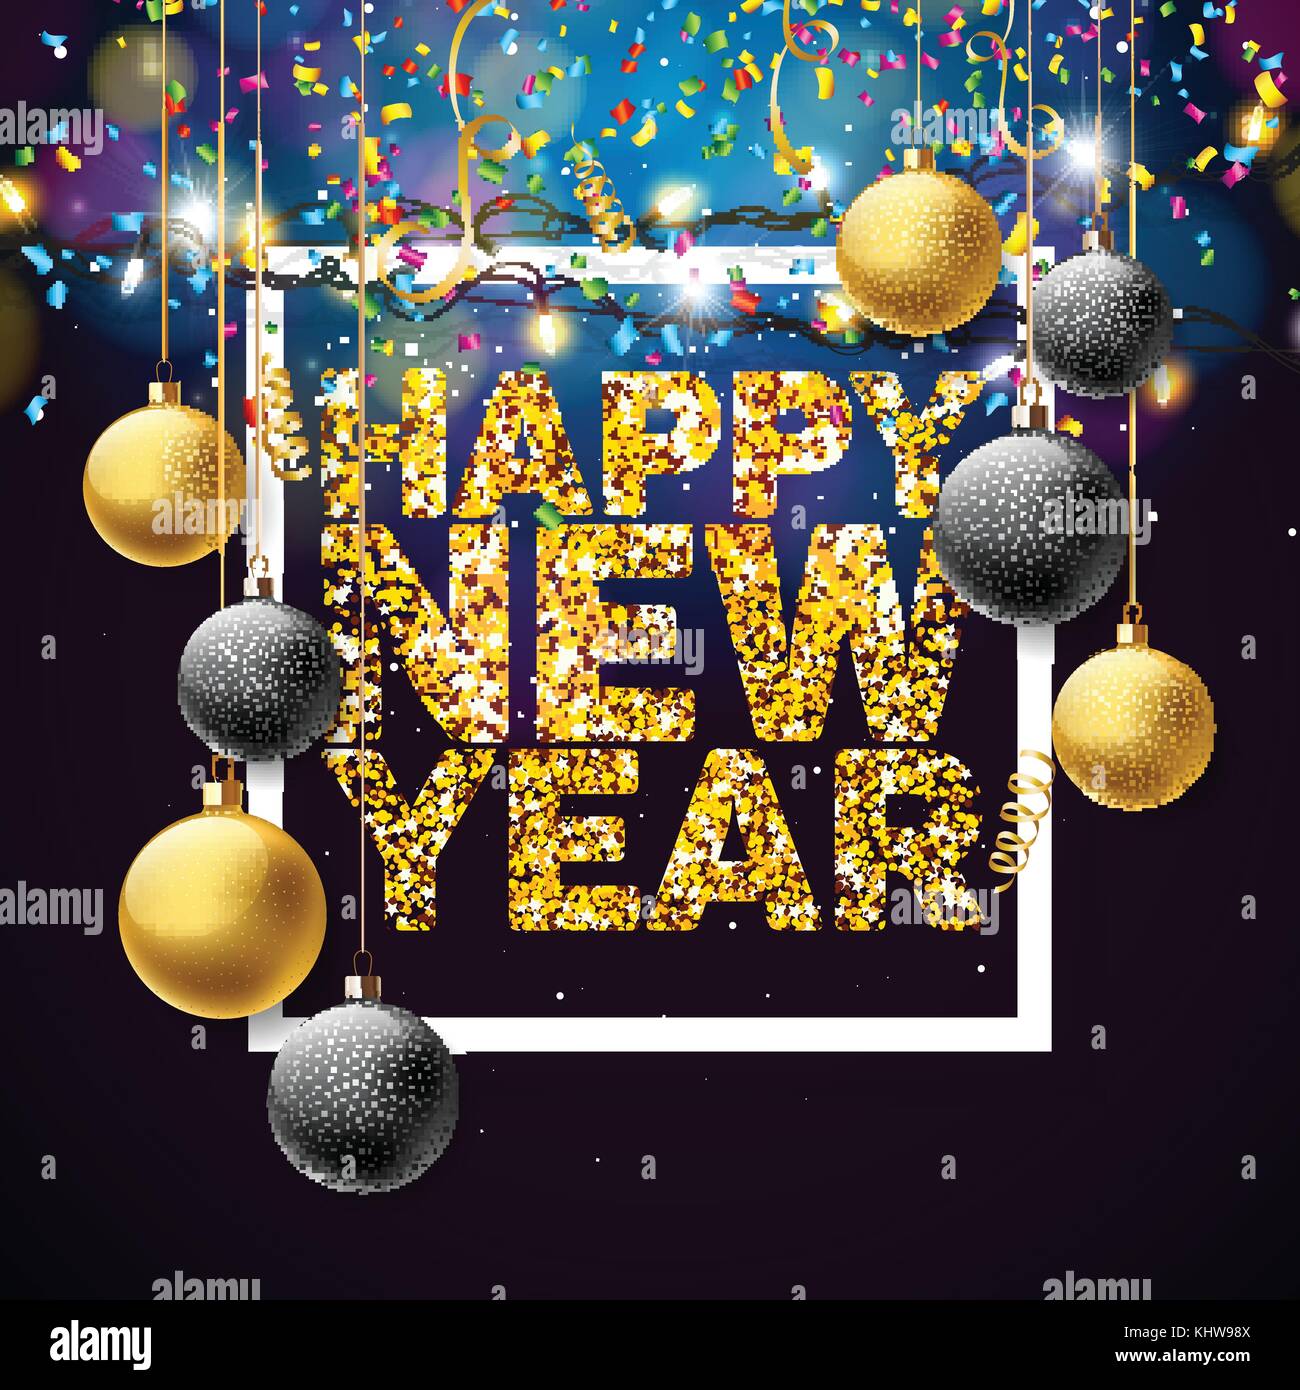 Vector felice anno nuovo 2018 illustrazione con shiny golden glitter design tipografia e sfere ornamentali su sfondo di confetti. eps 10. Illustrazione Vettoriale